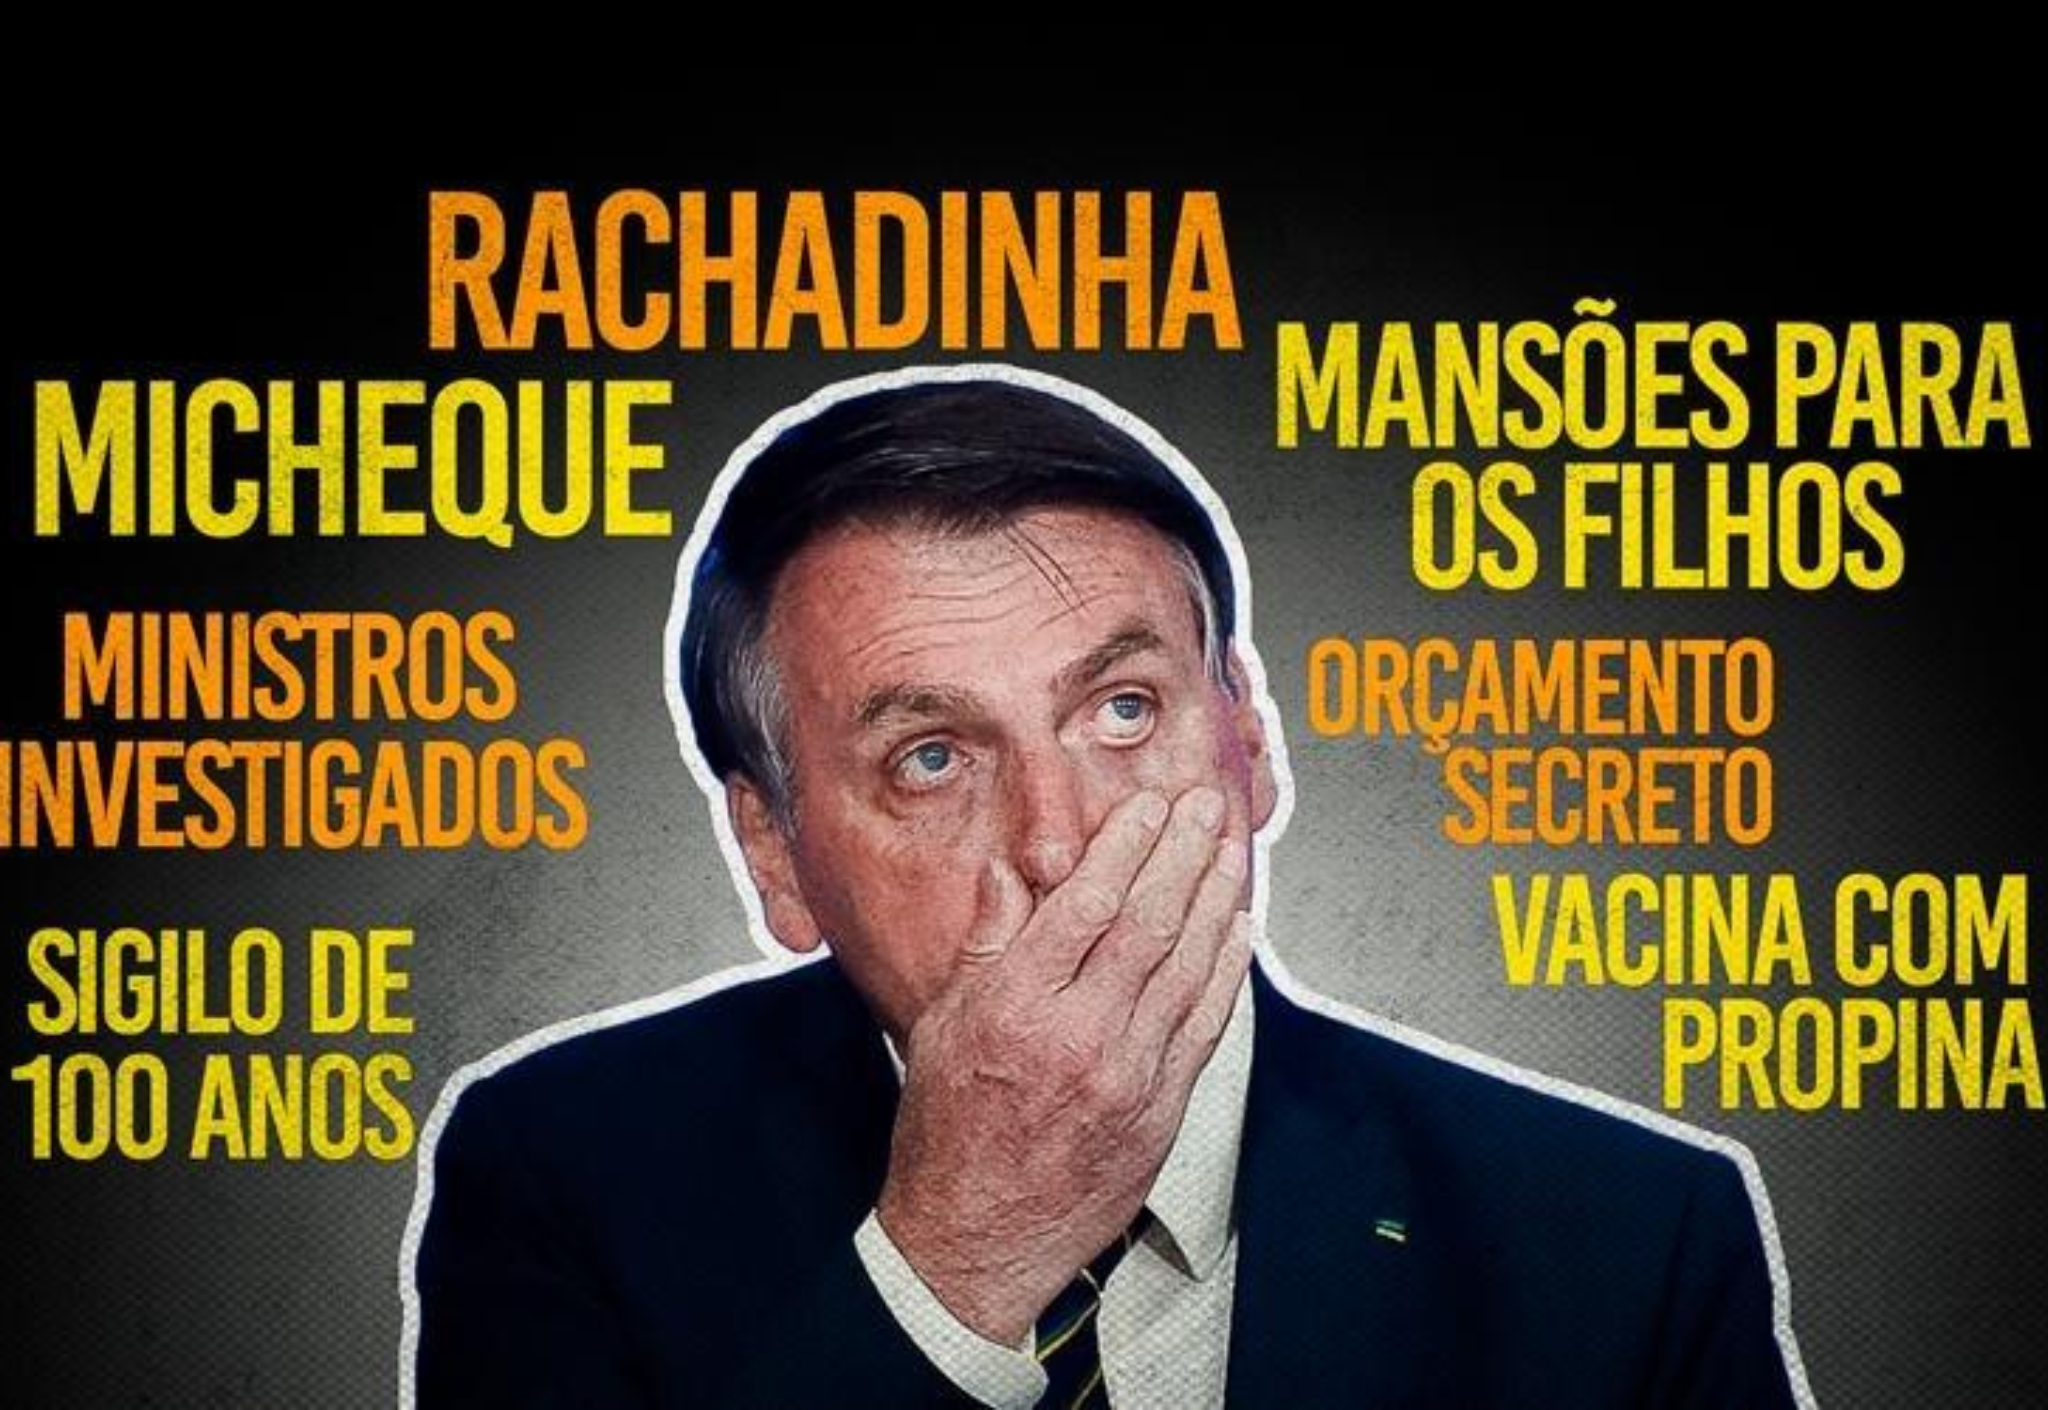 Bolsonaro interferiu sistematicamente em órgãos de investigação e persecução criminal